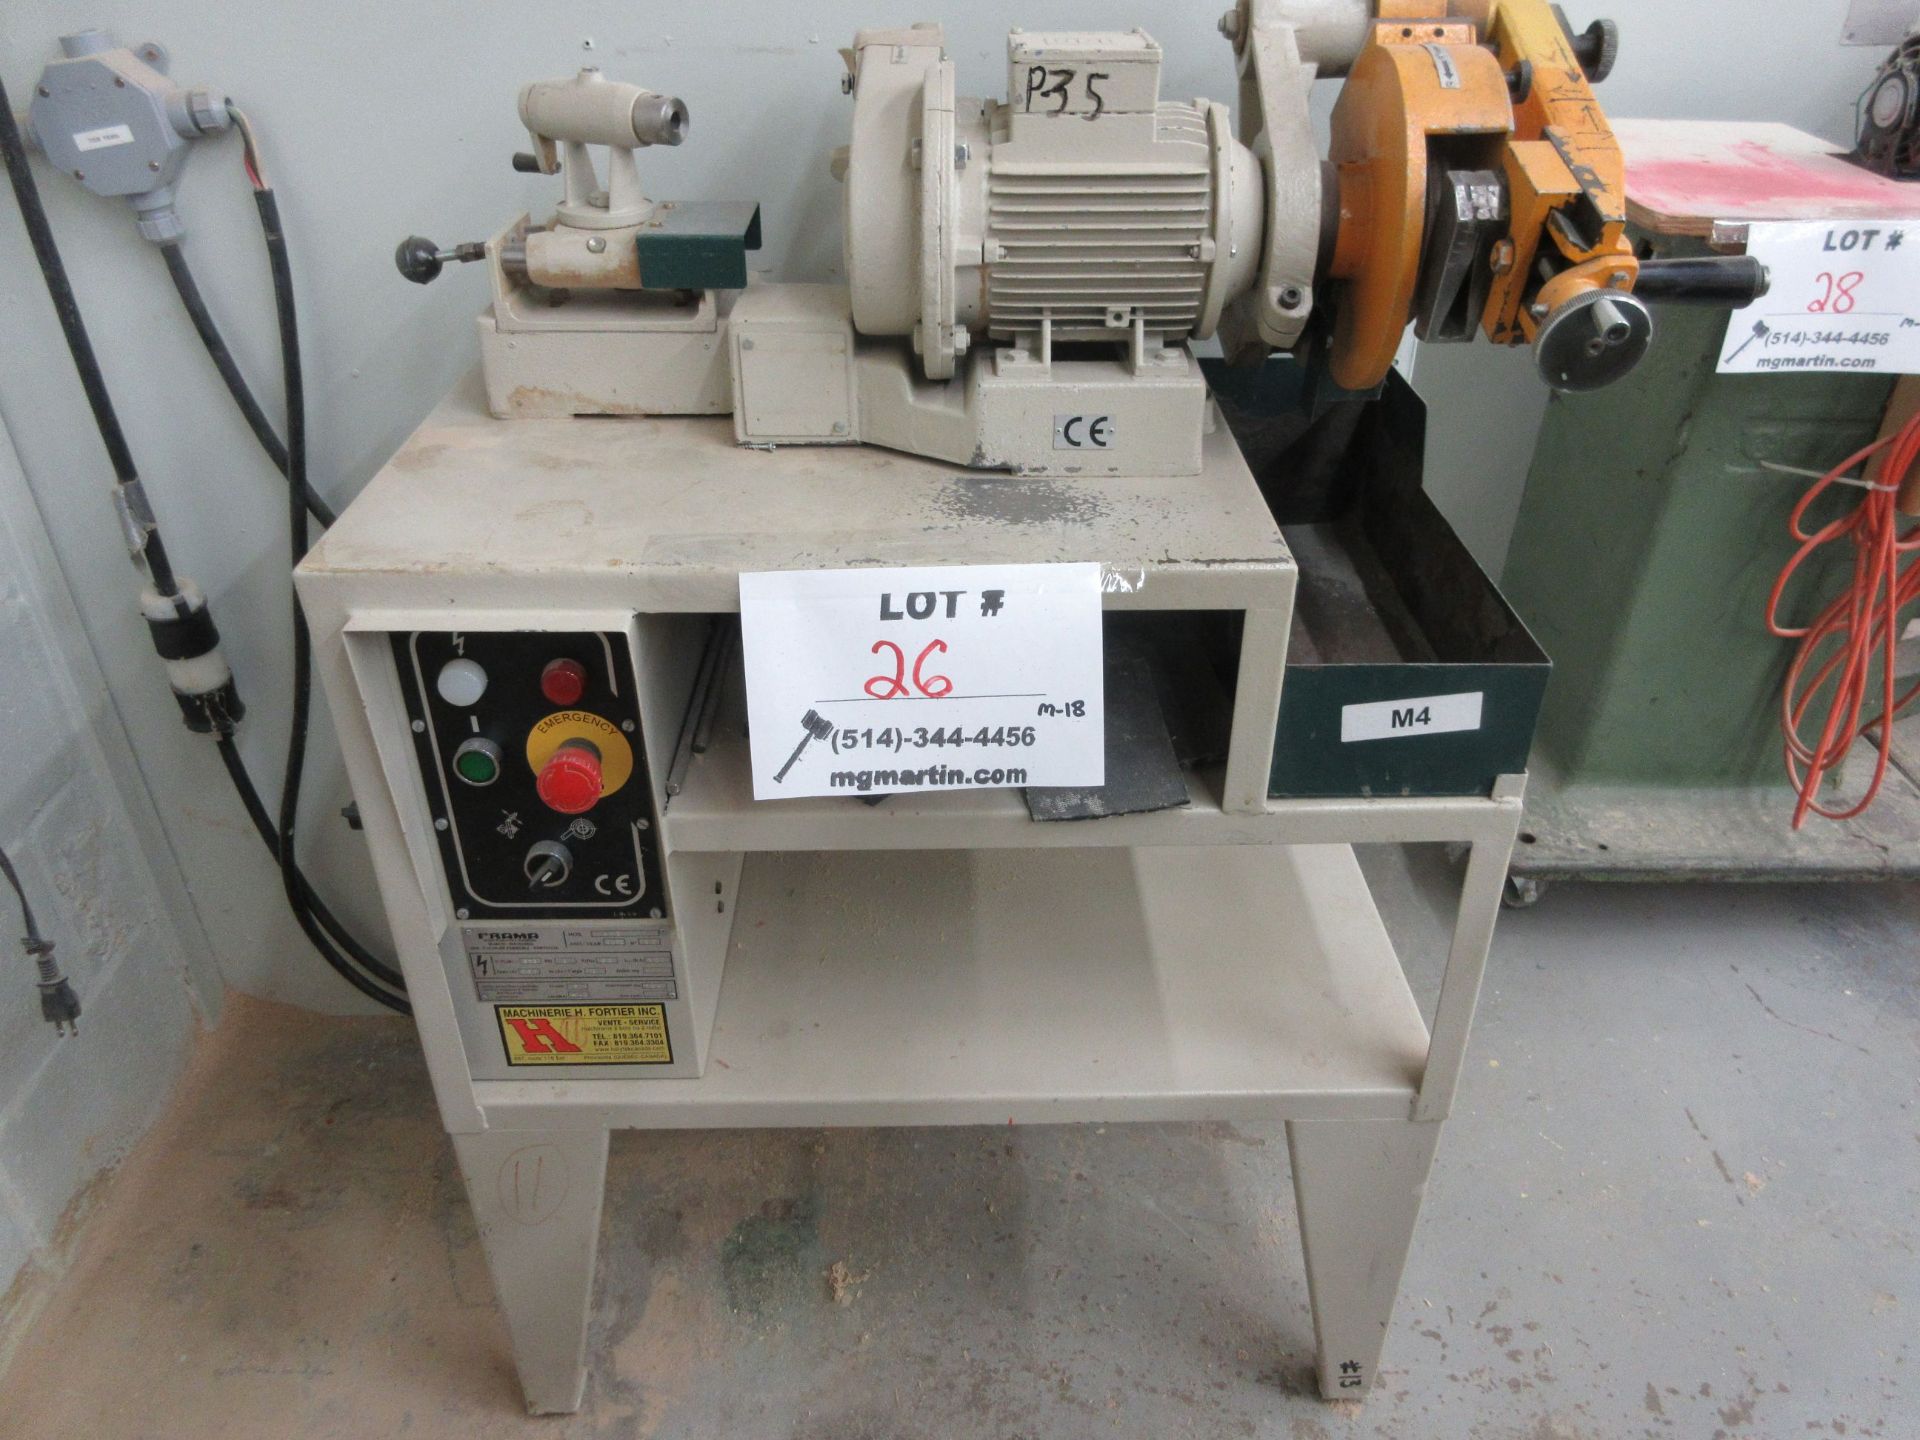 FRAMA grinder/sharpener, Mod: ATC, 600 volts